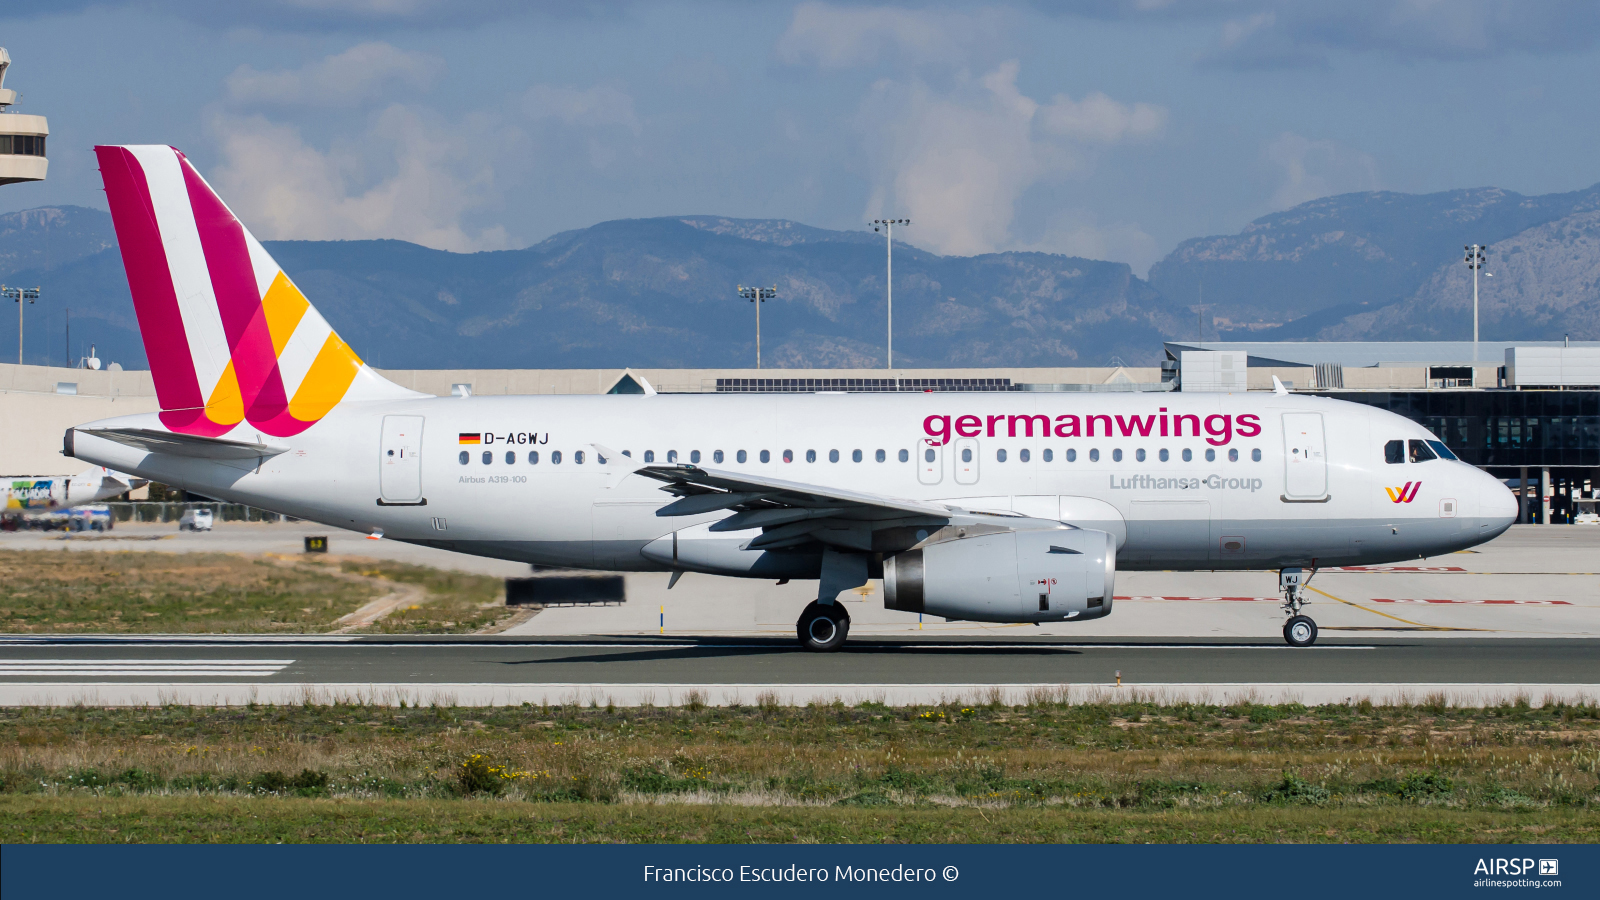 Germanwings  Airbus A319  D-AGWJ